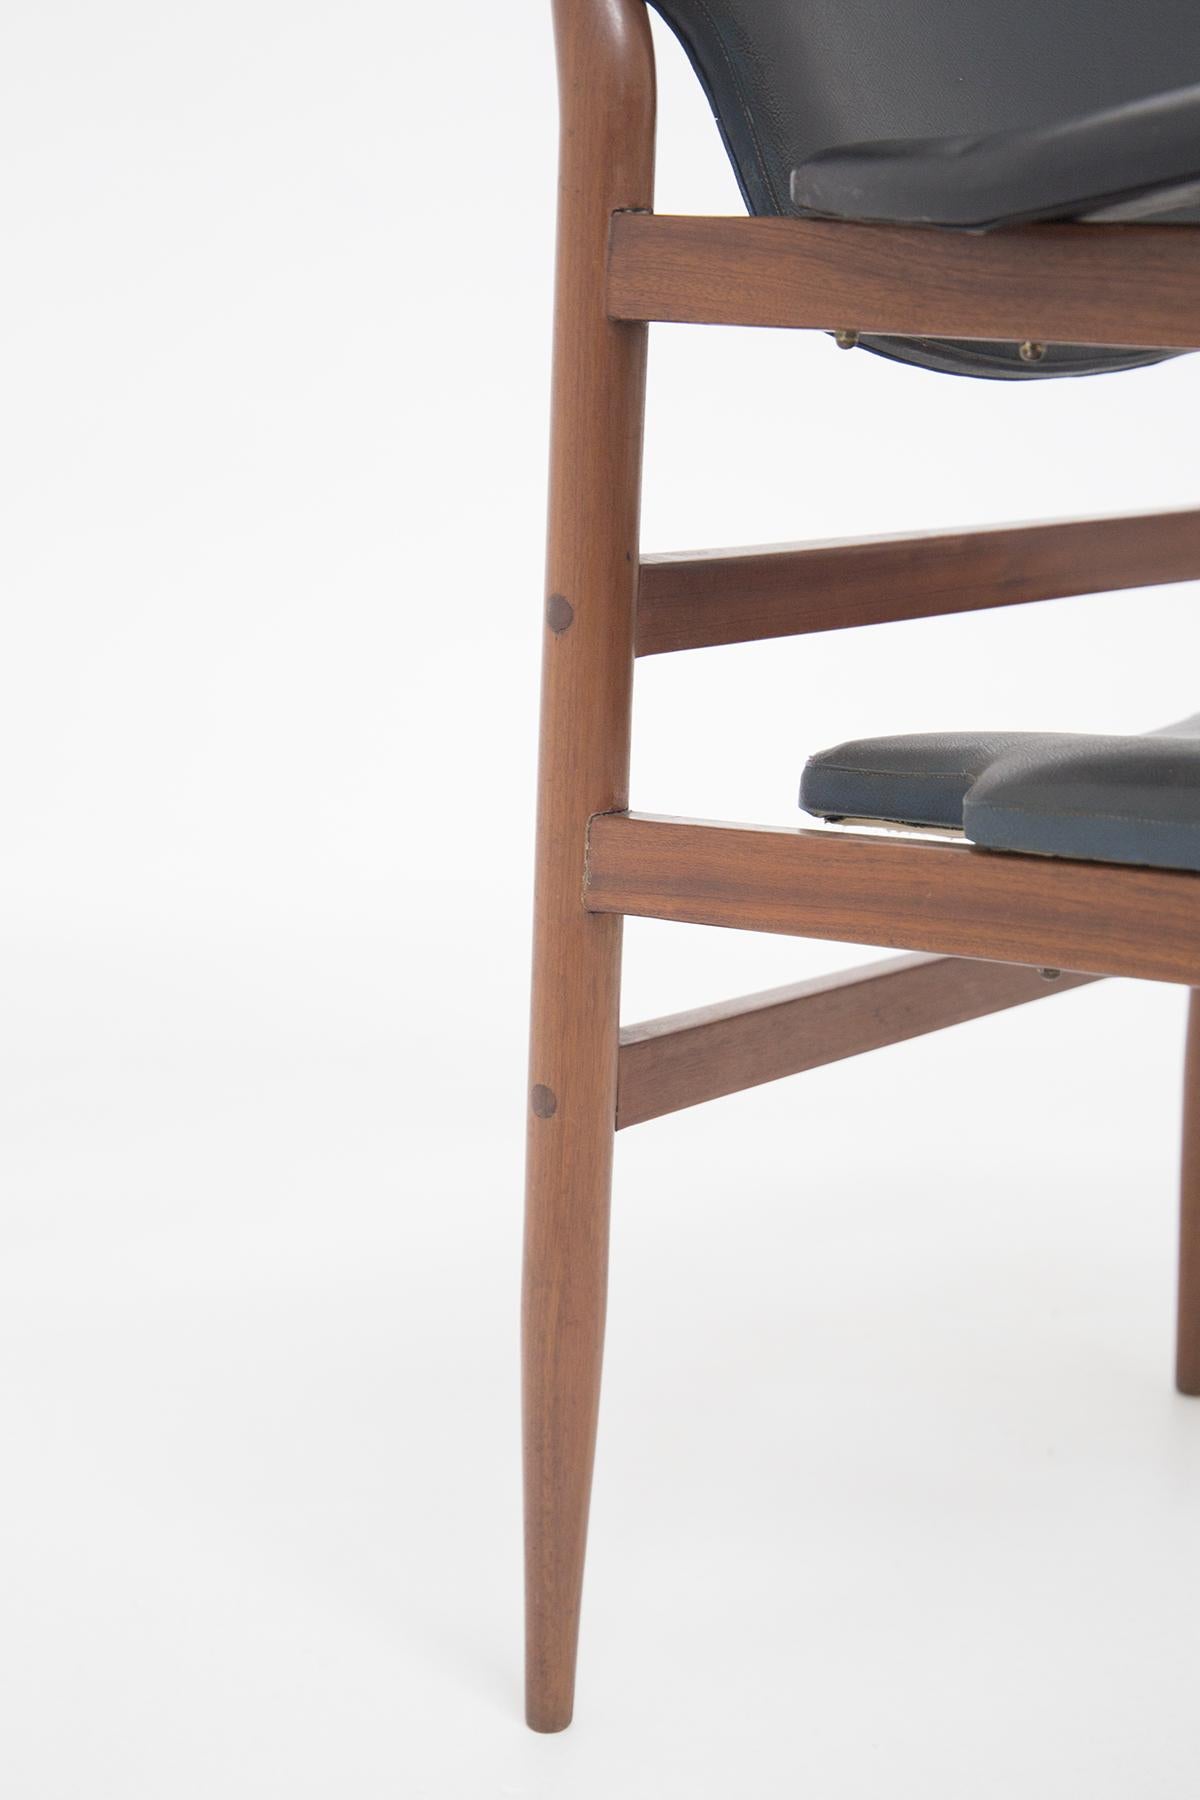 Sweden Vintage Armchair in Wood and Leather att. to Gunnar Asplund 4